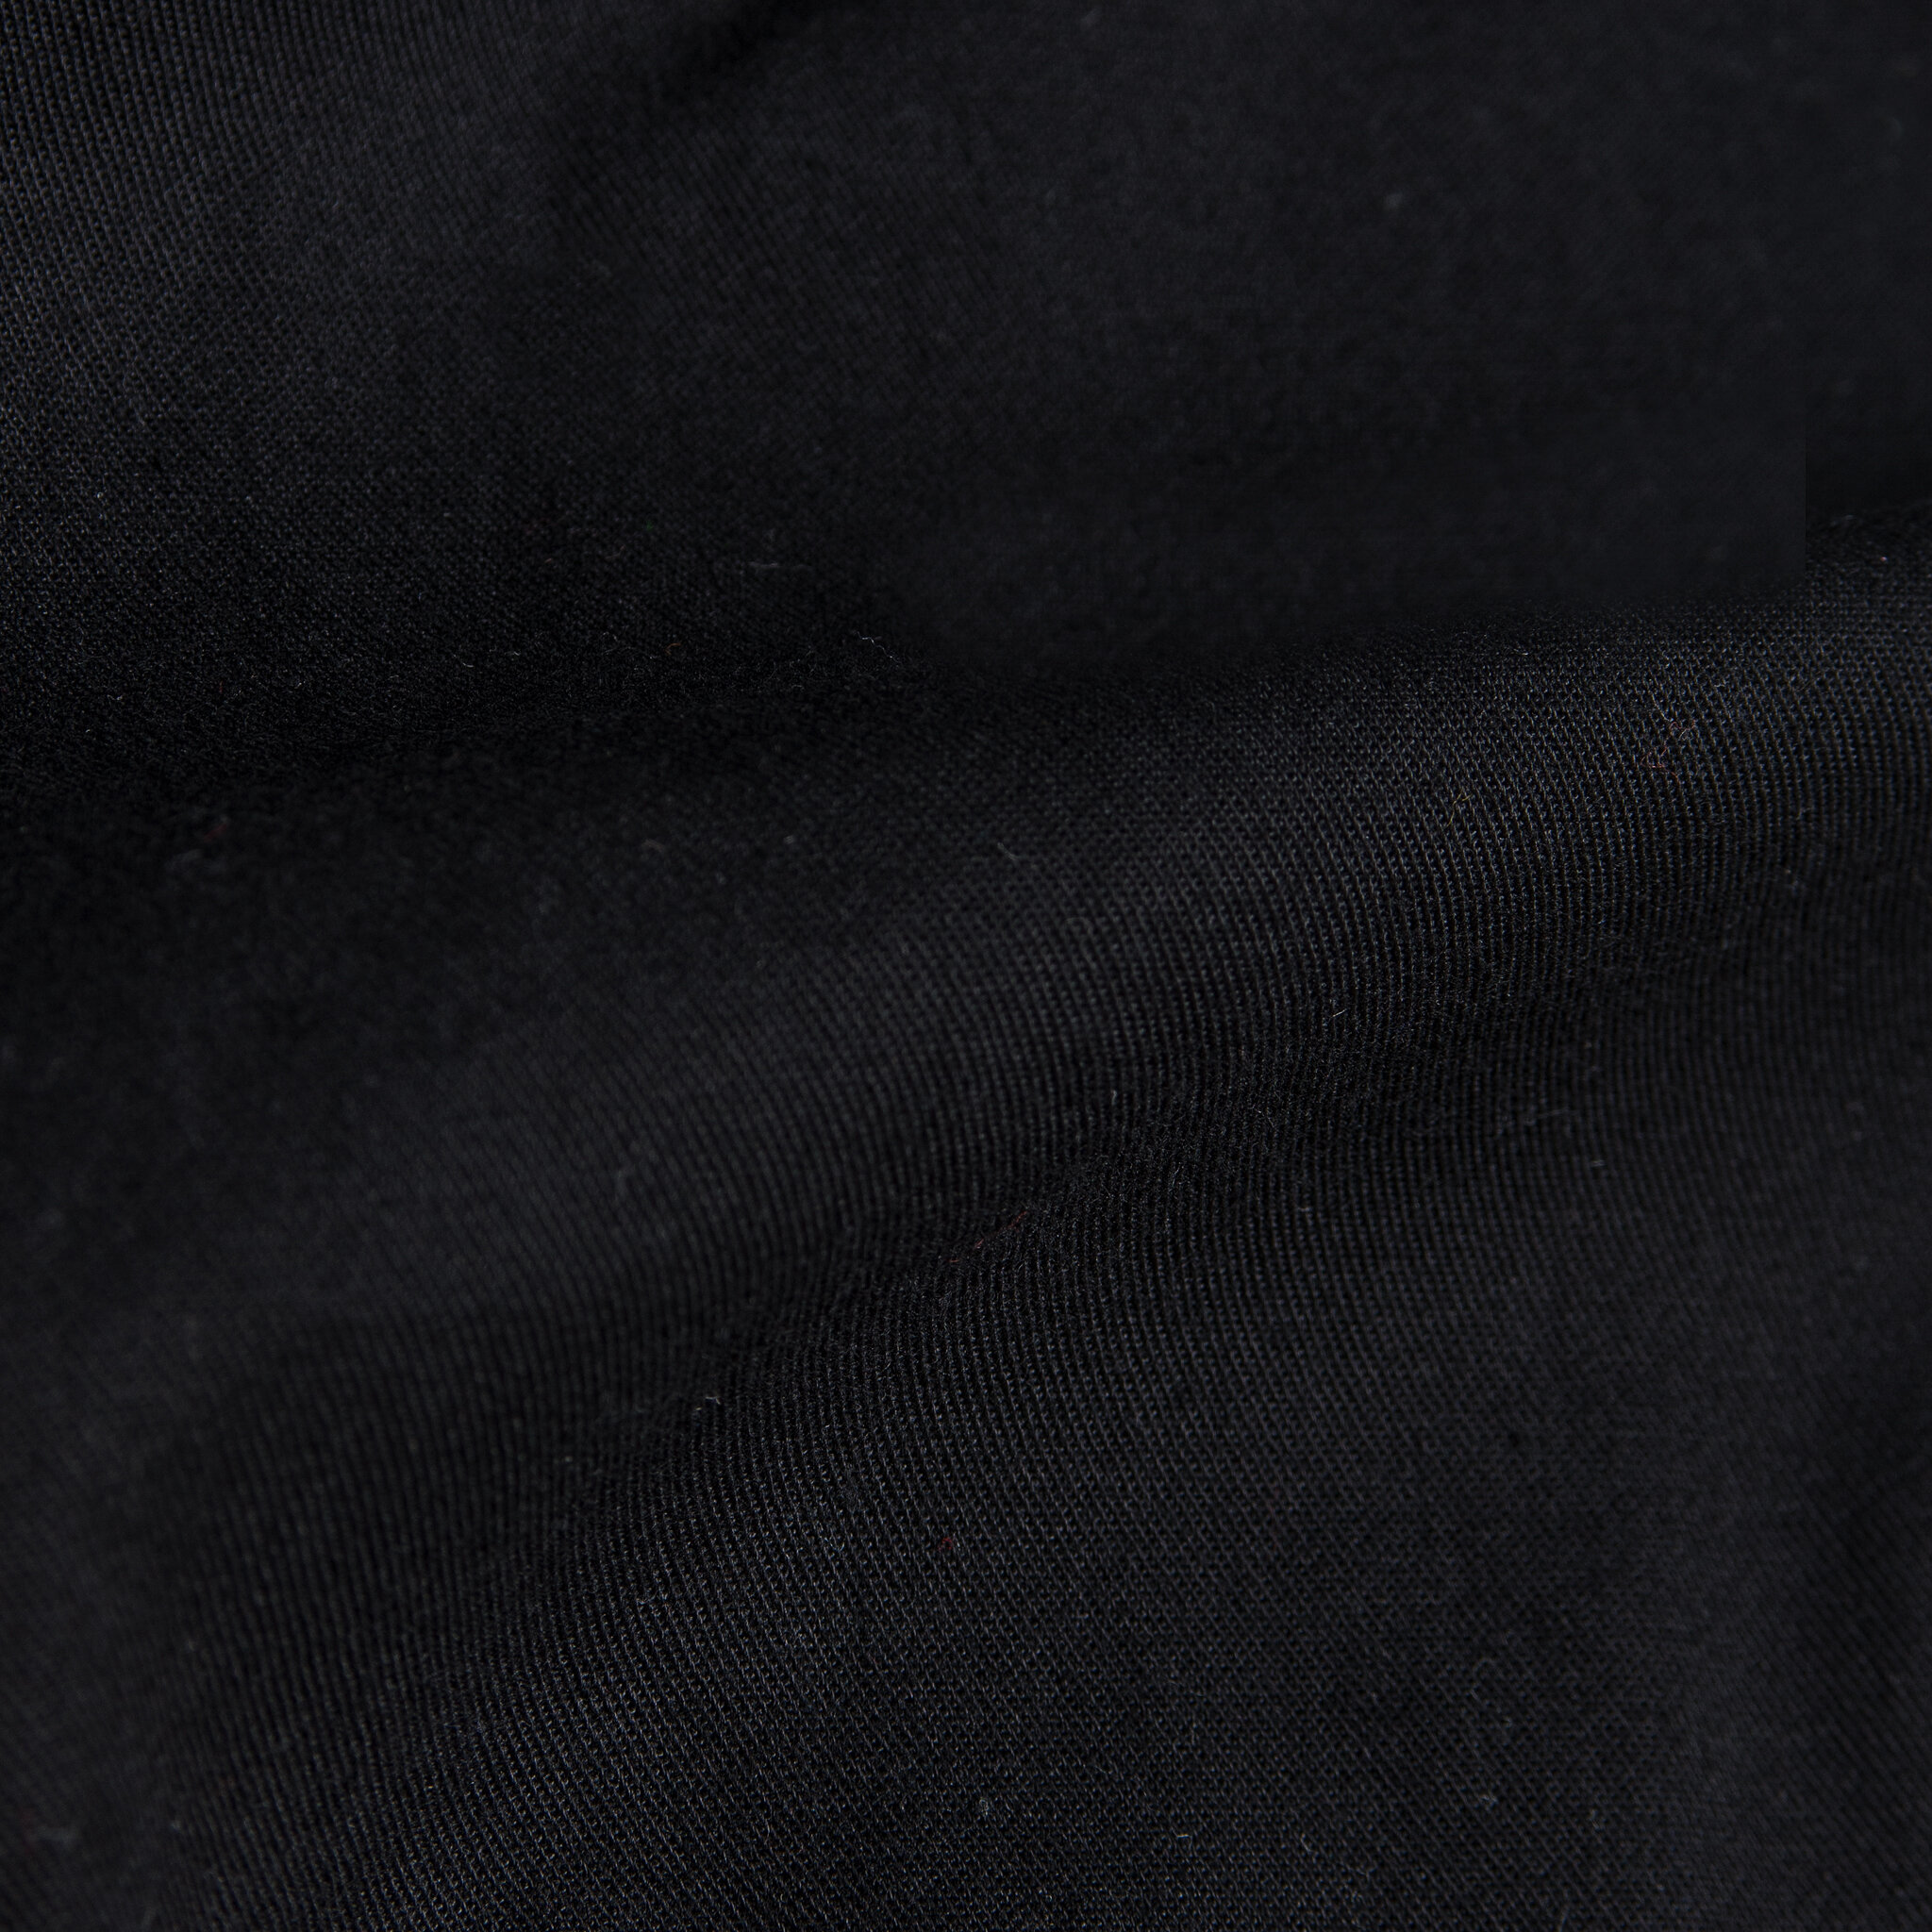  Easy Shirt - Black Short Slub Denim - fabric 